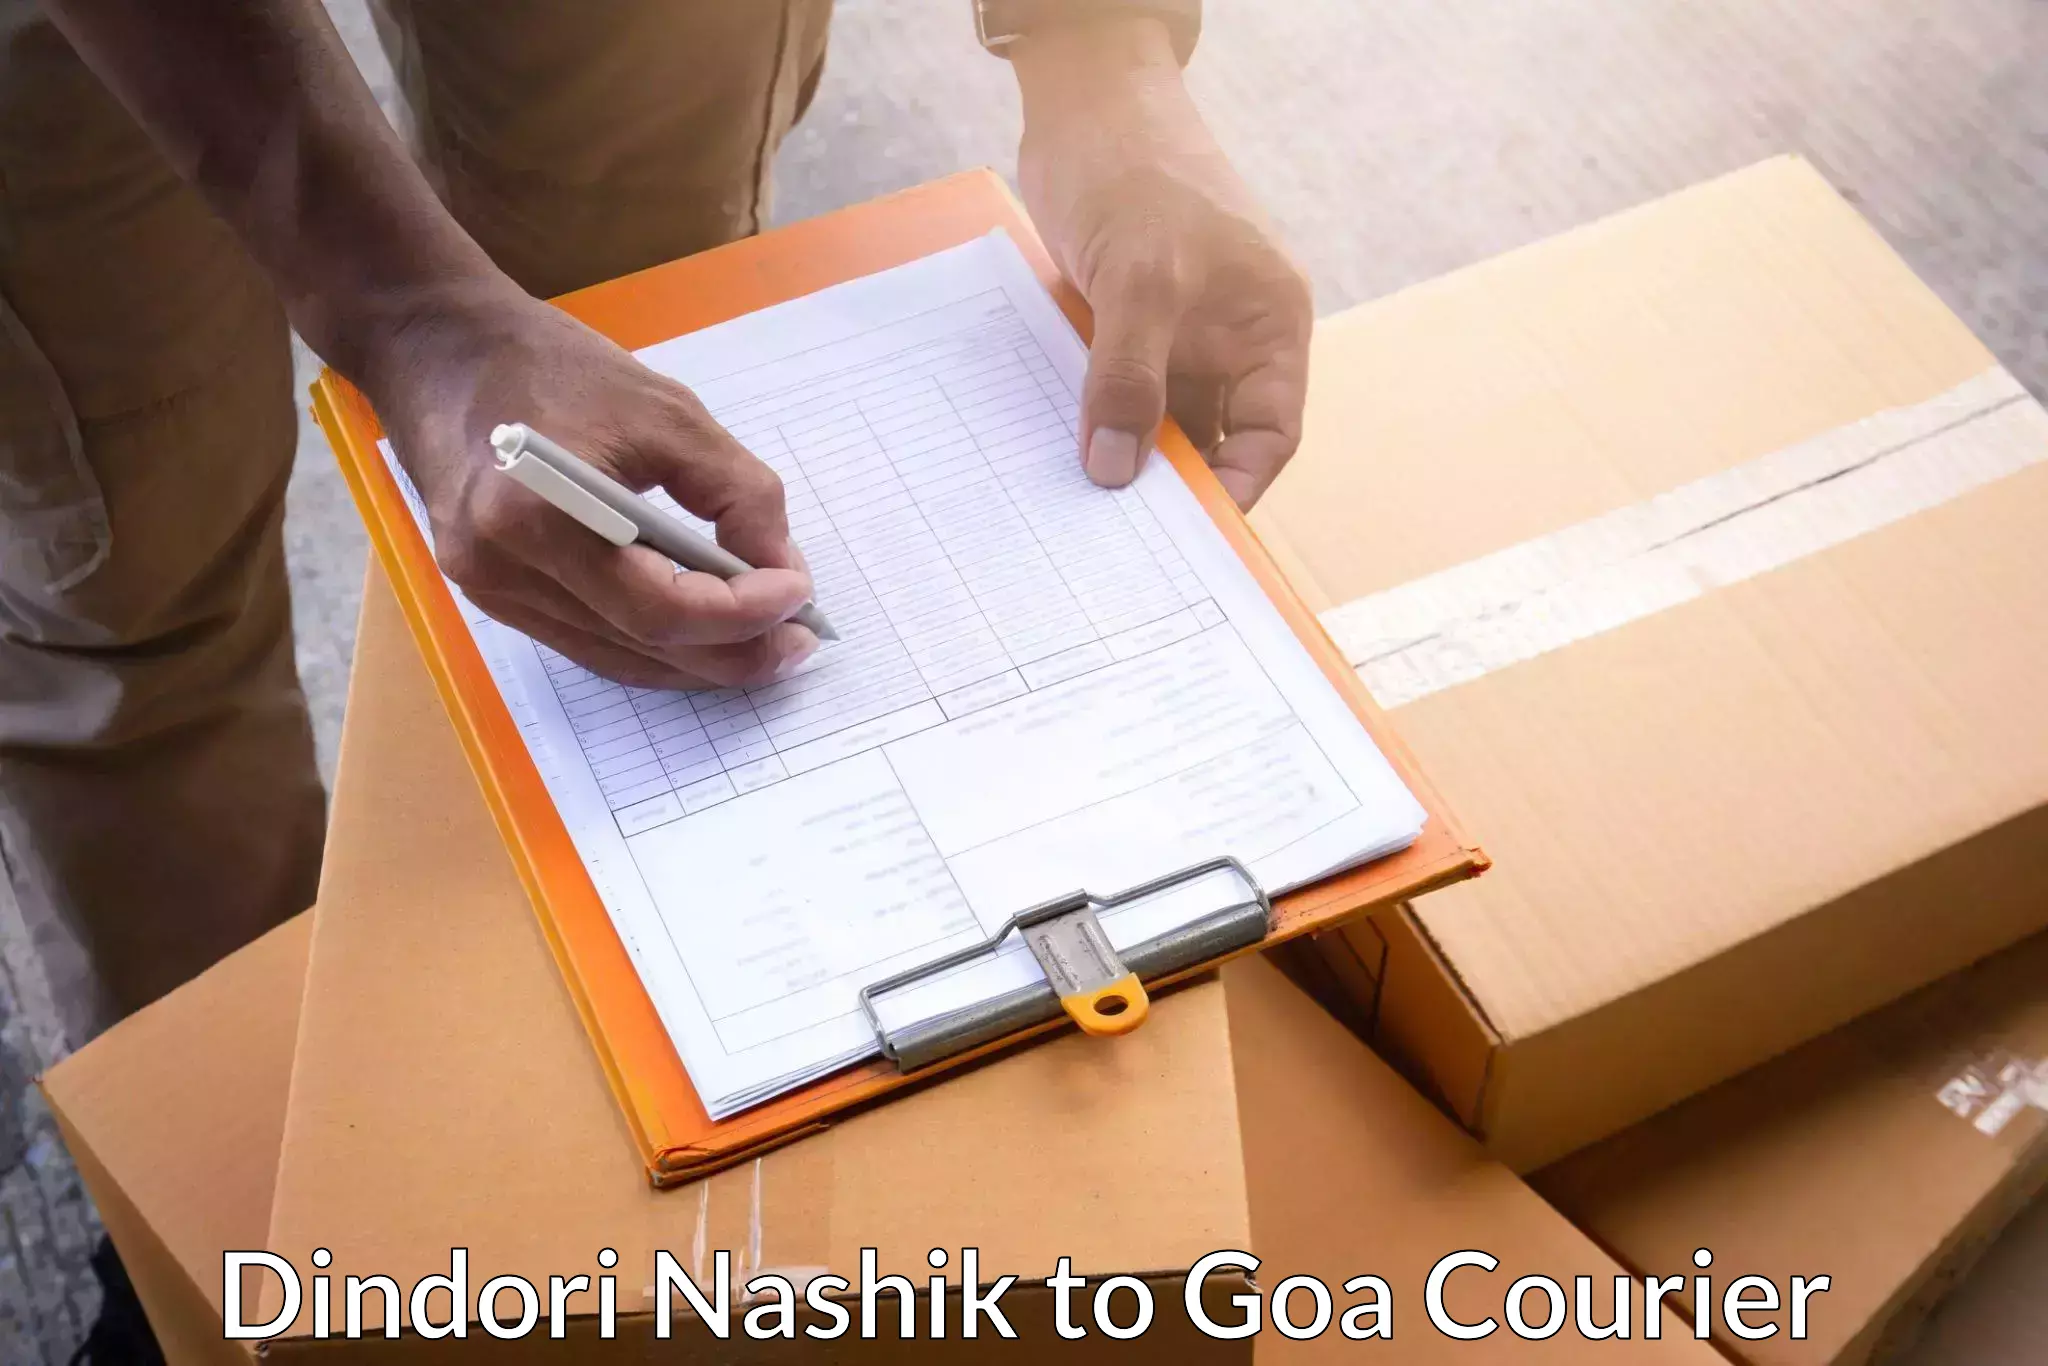 Reliable courier service Dindori Nashik to Mormugao Port